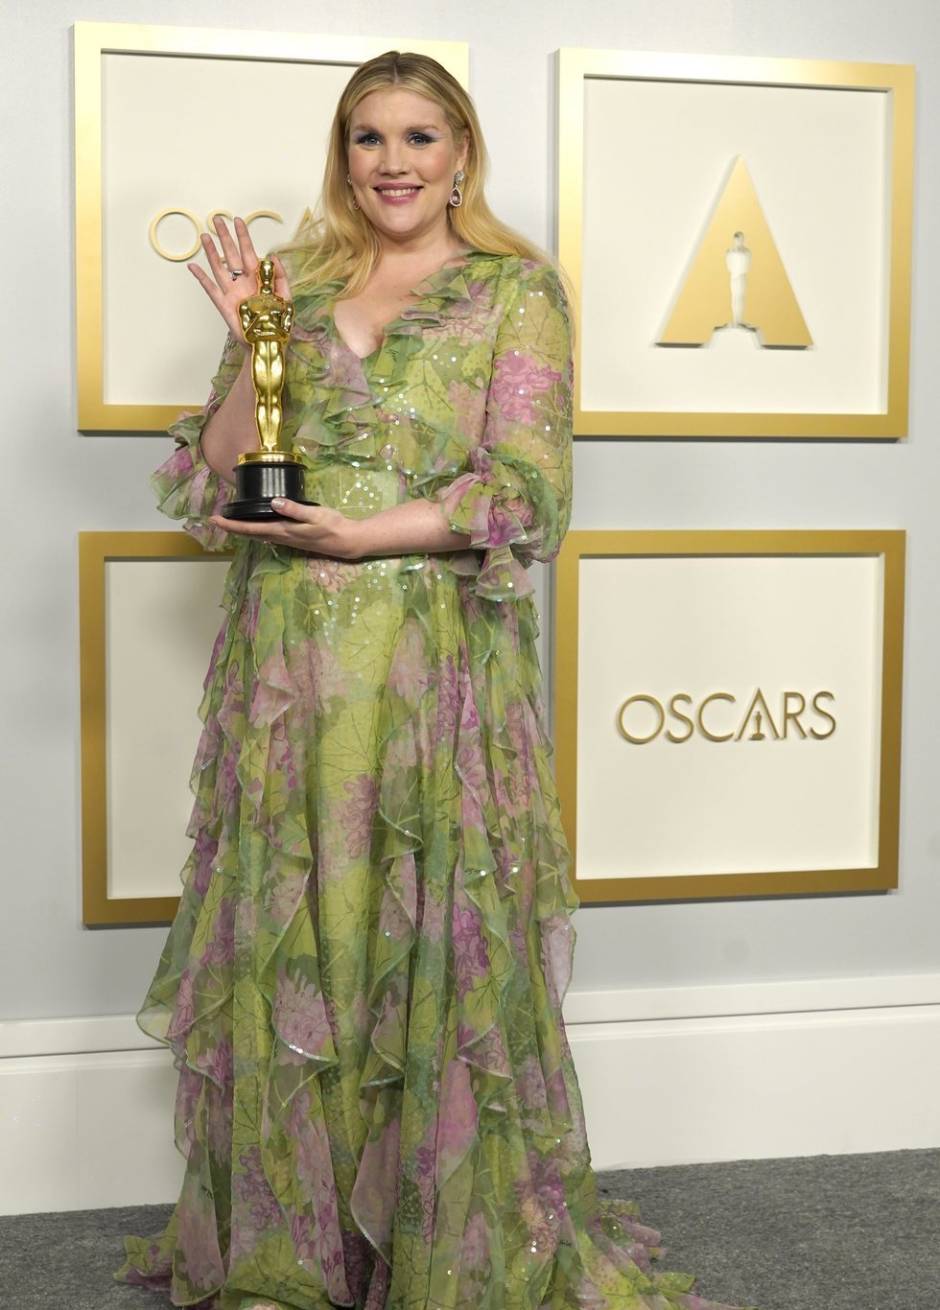 Emerald Fennell se llevó el Oscar 2021 a Mejor guión original